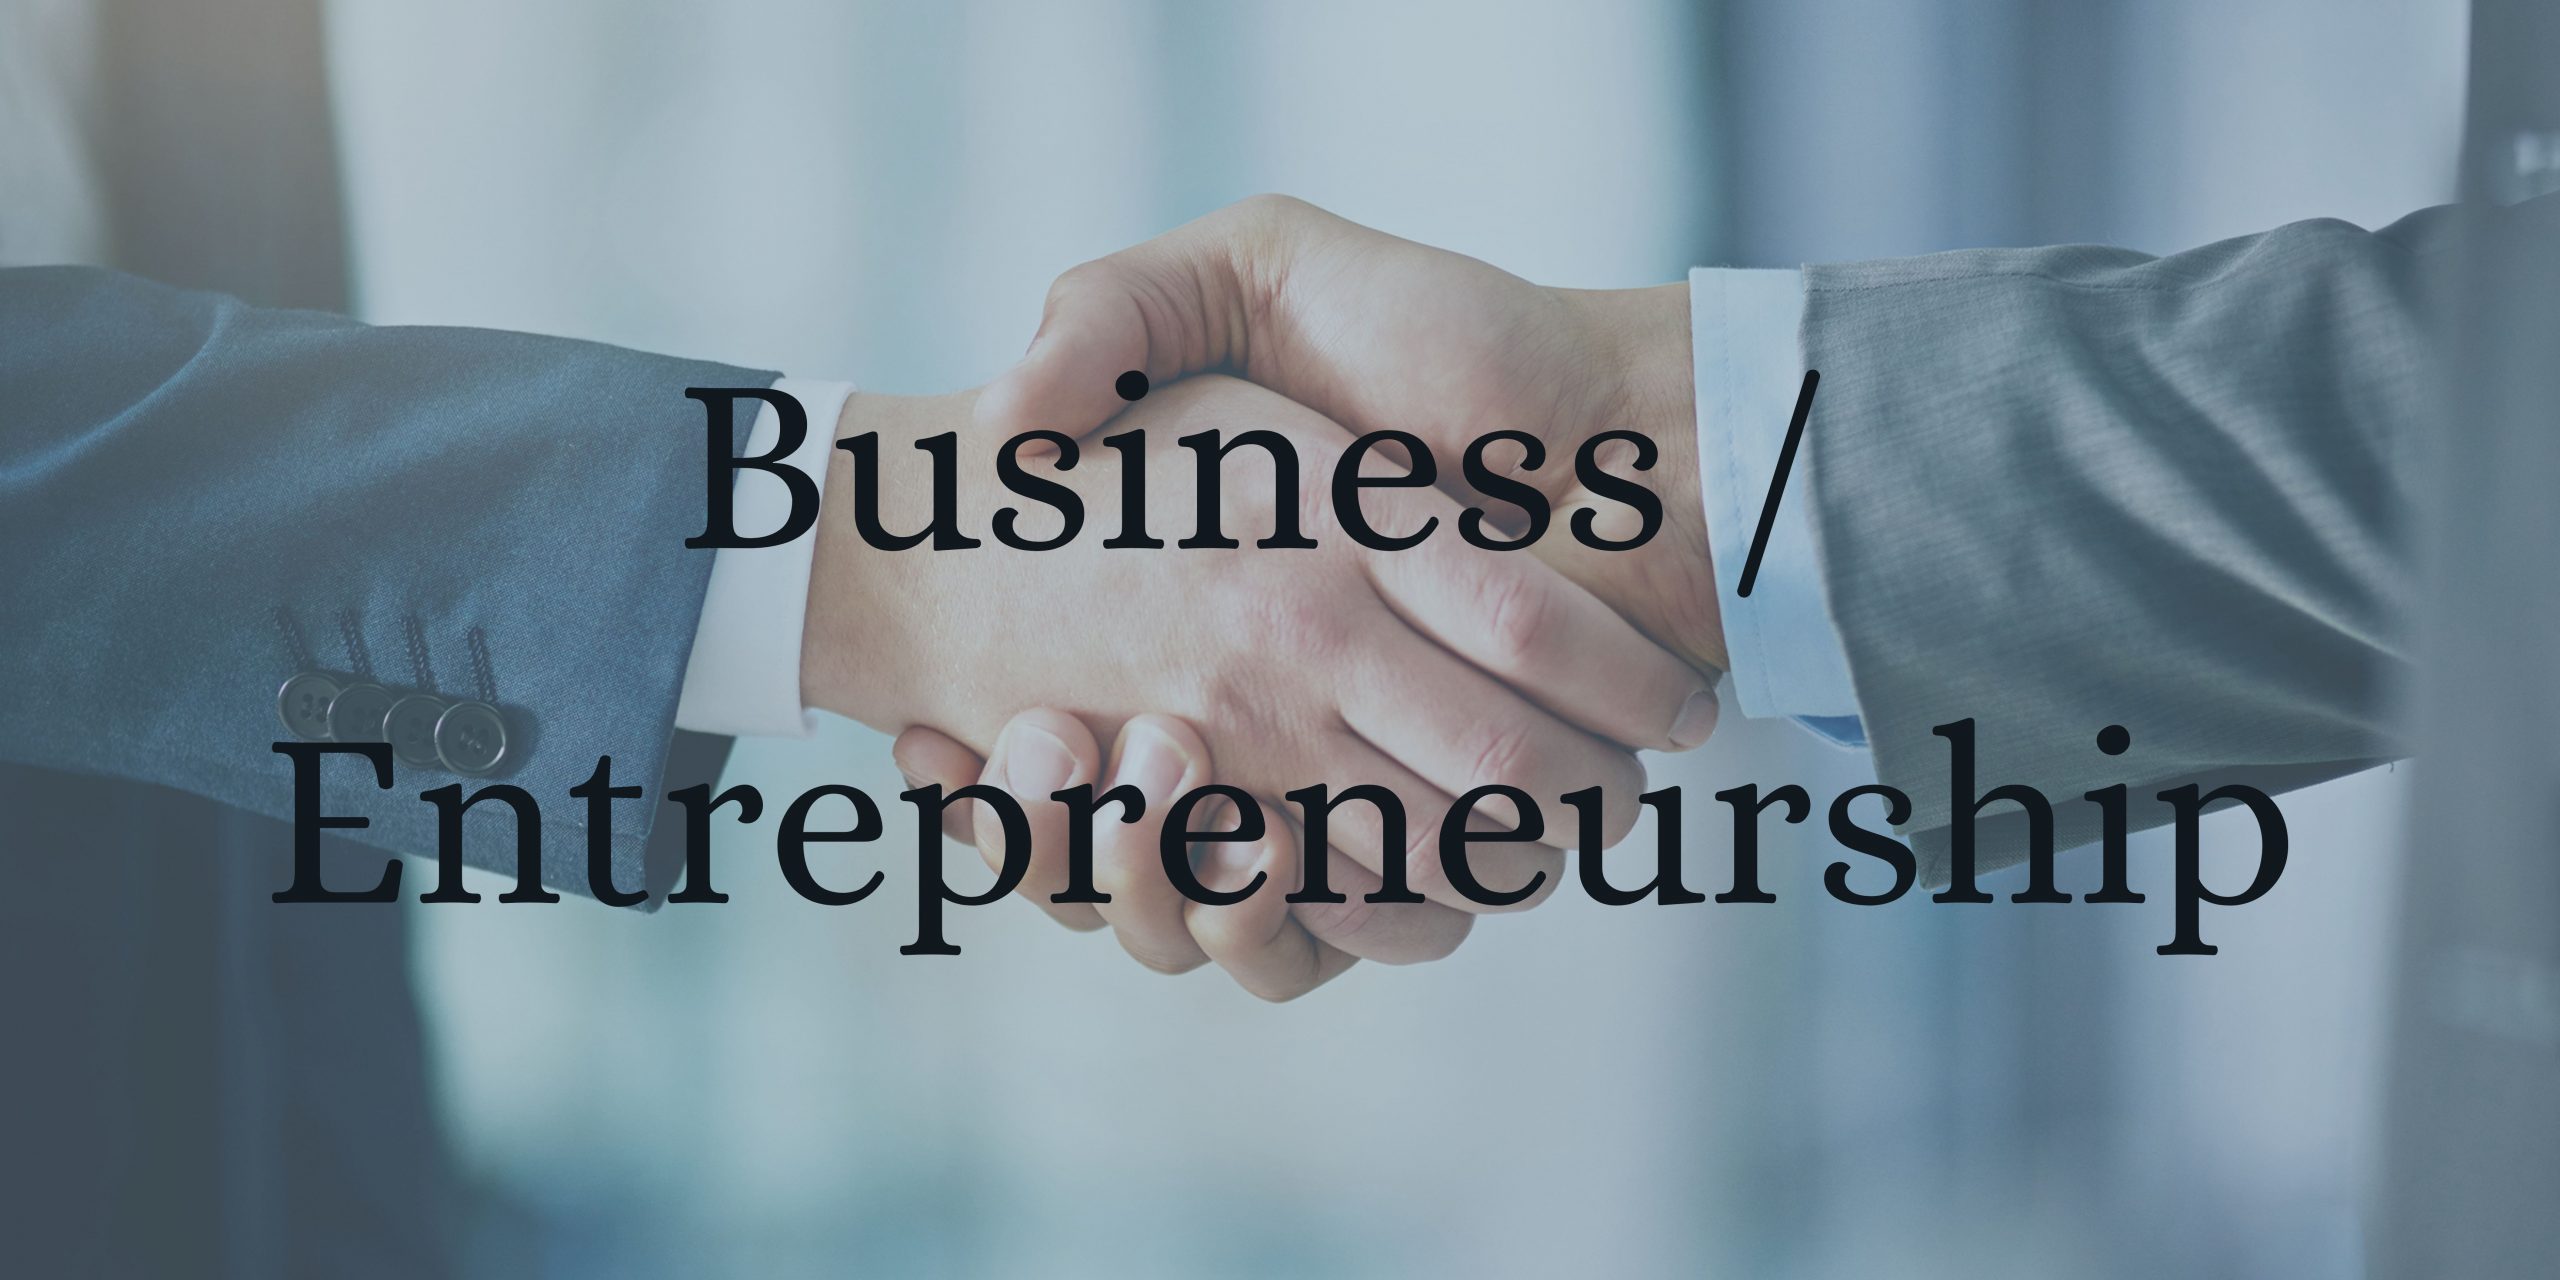 Business / Entrepreneurship